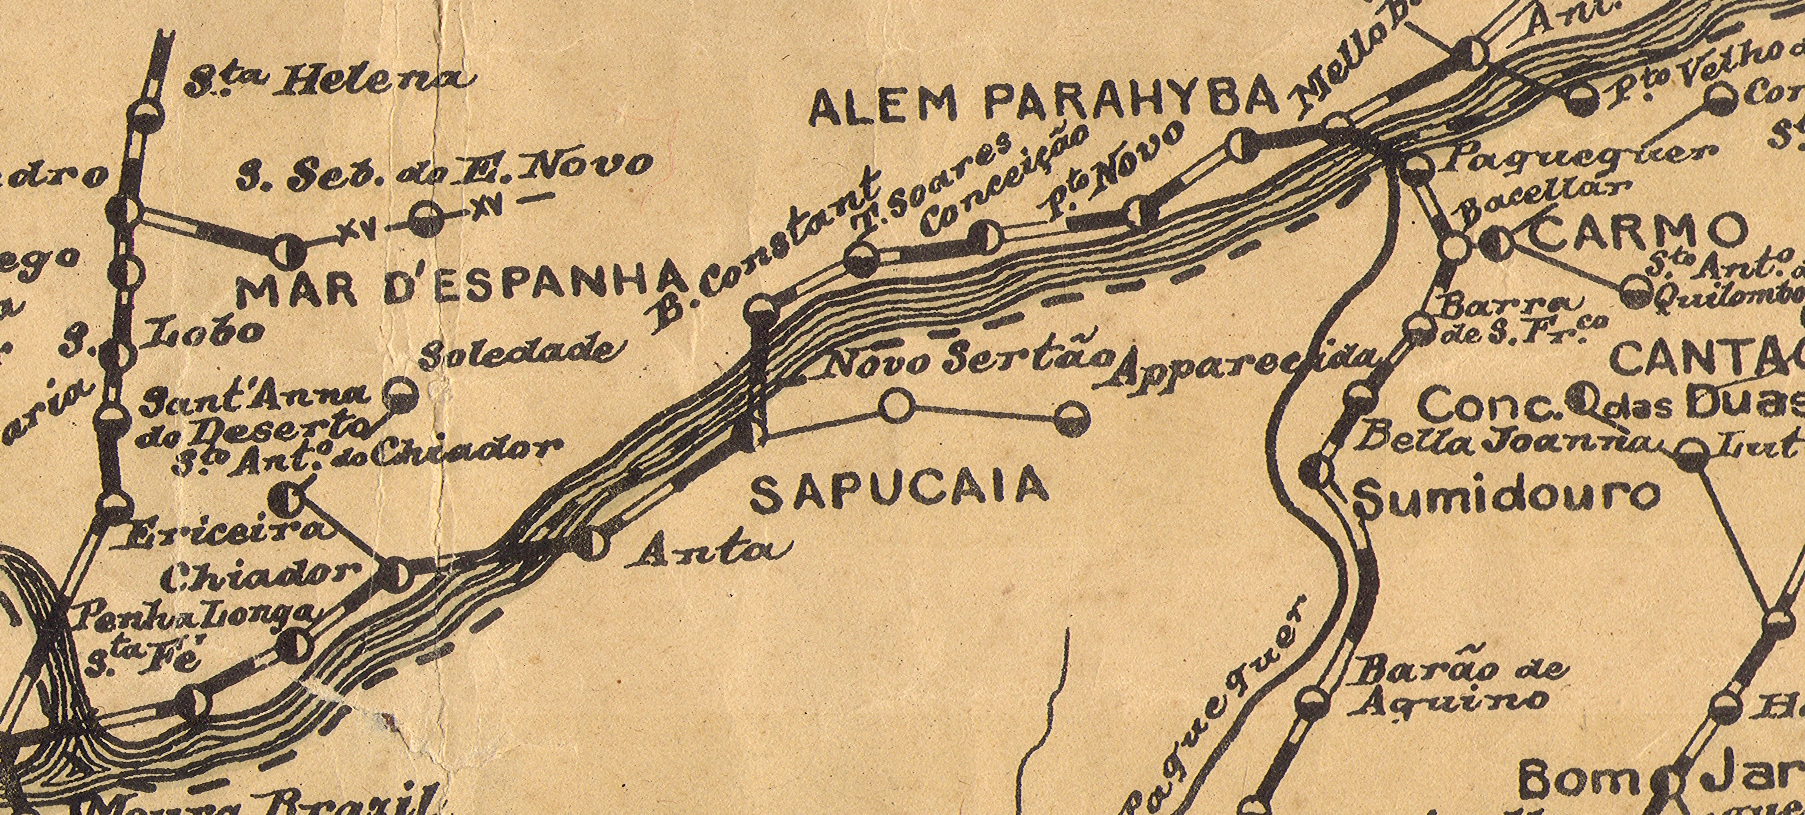 sapucaia-mapa-postal-de-1928